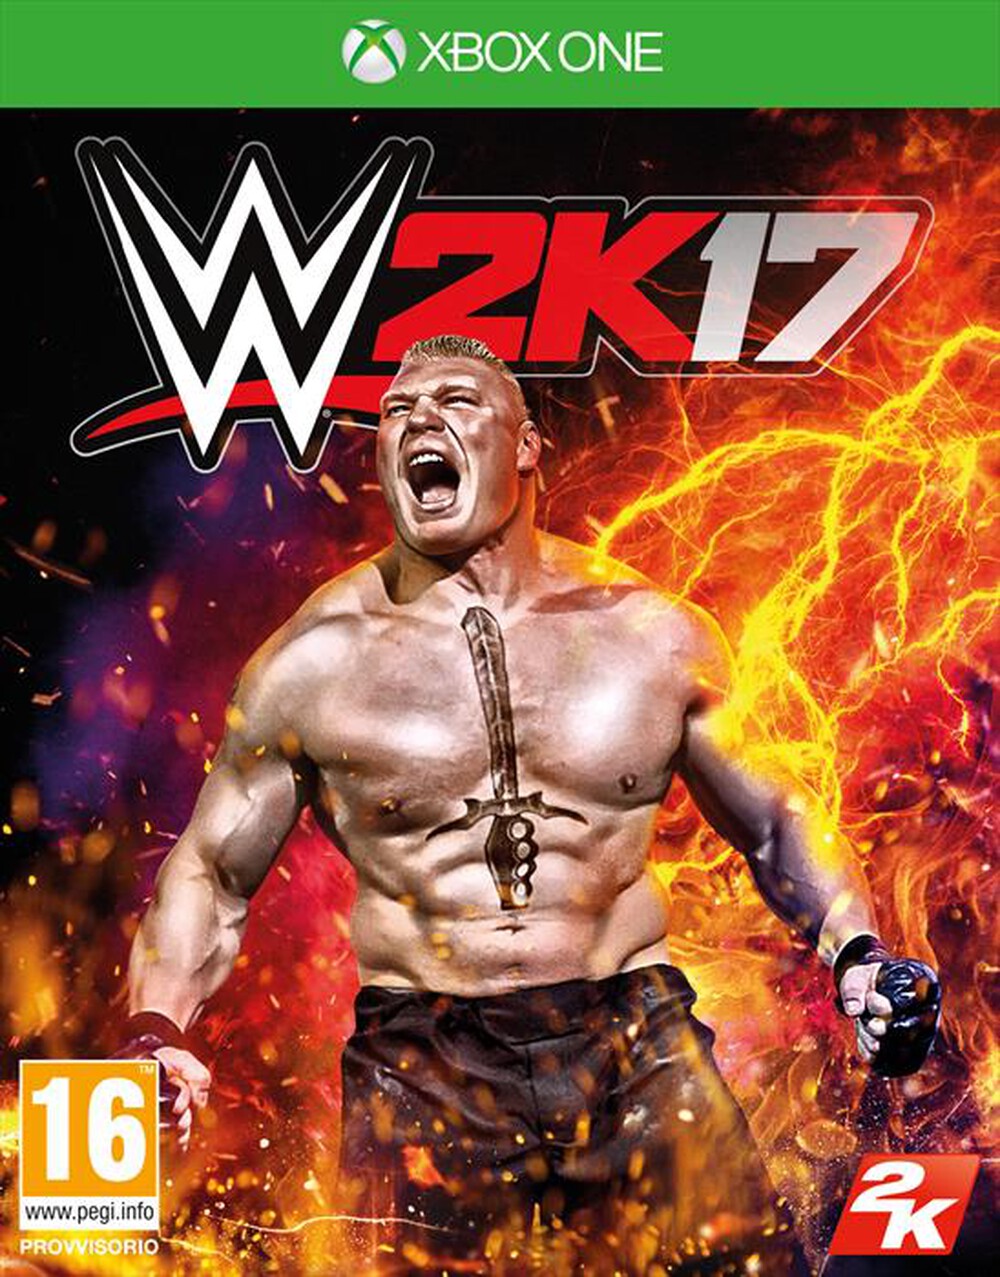 "TAKE TWO - WWE 2K17 Xbox One - "